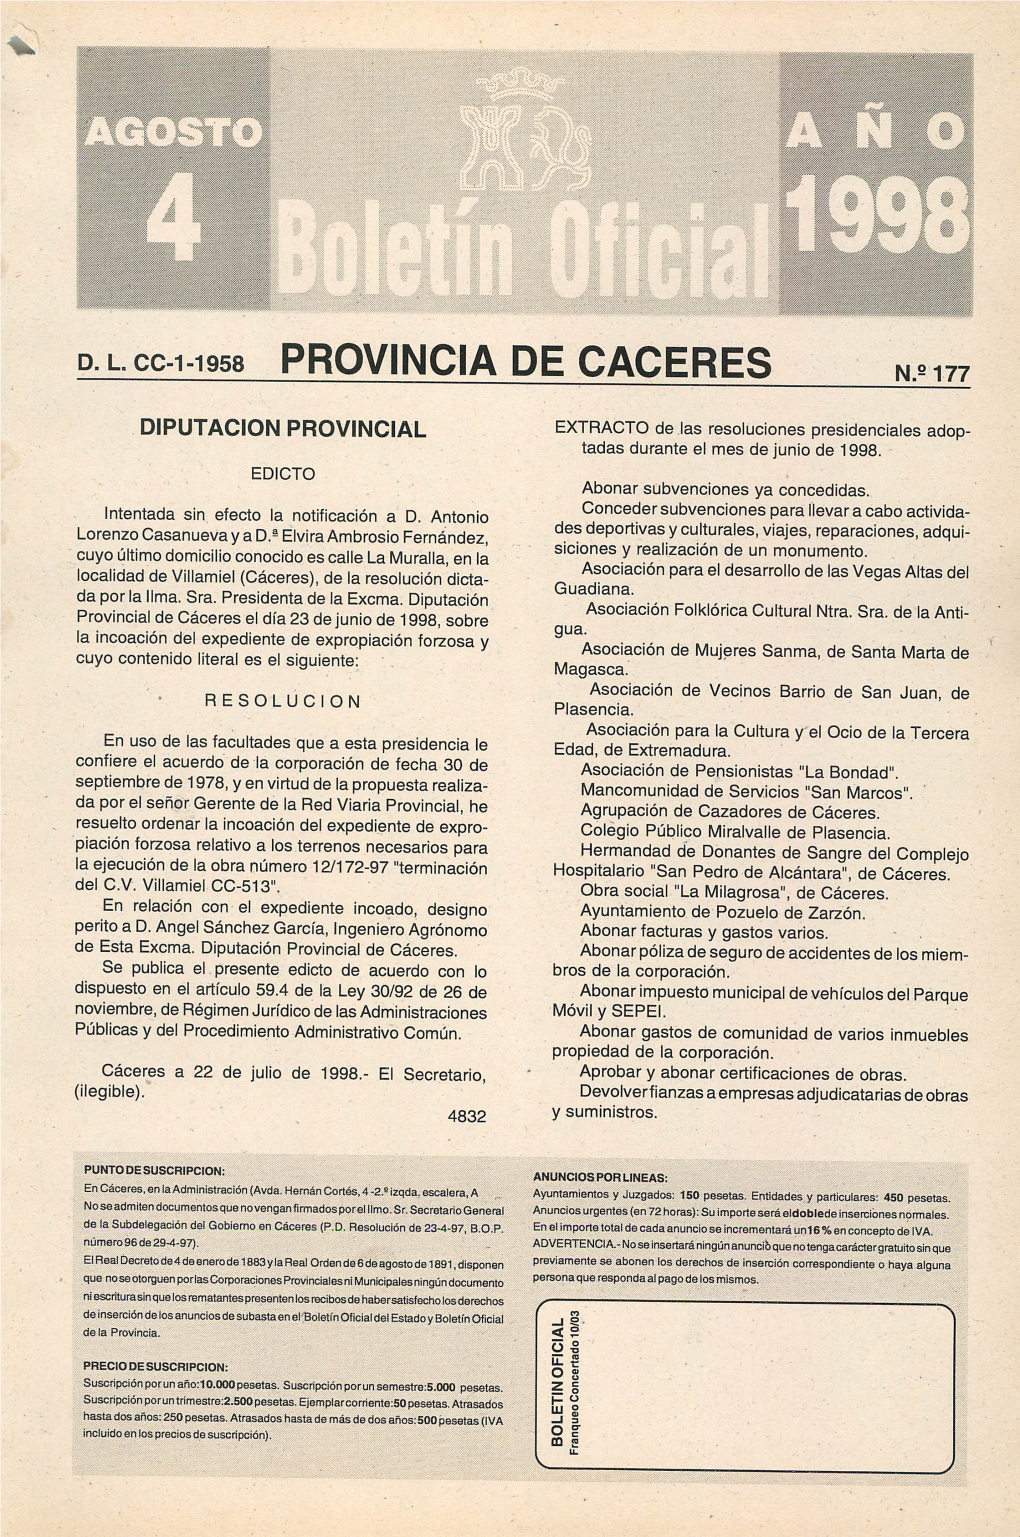 D.L.Cc-1-1958 PROVINCIA DE CACERES N.2 177